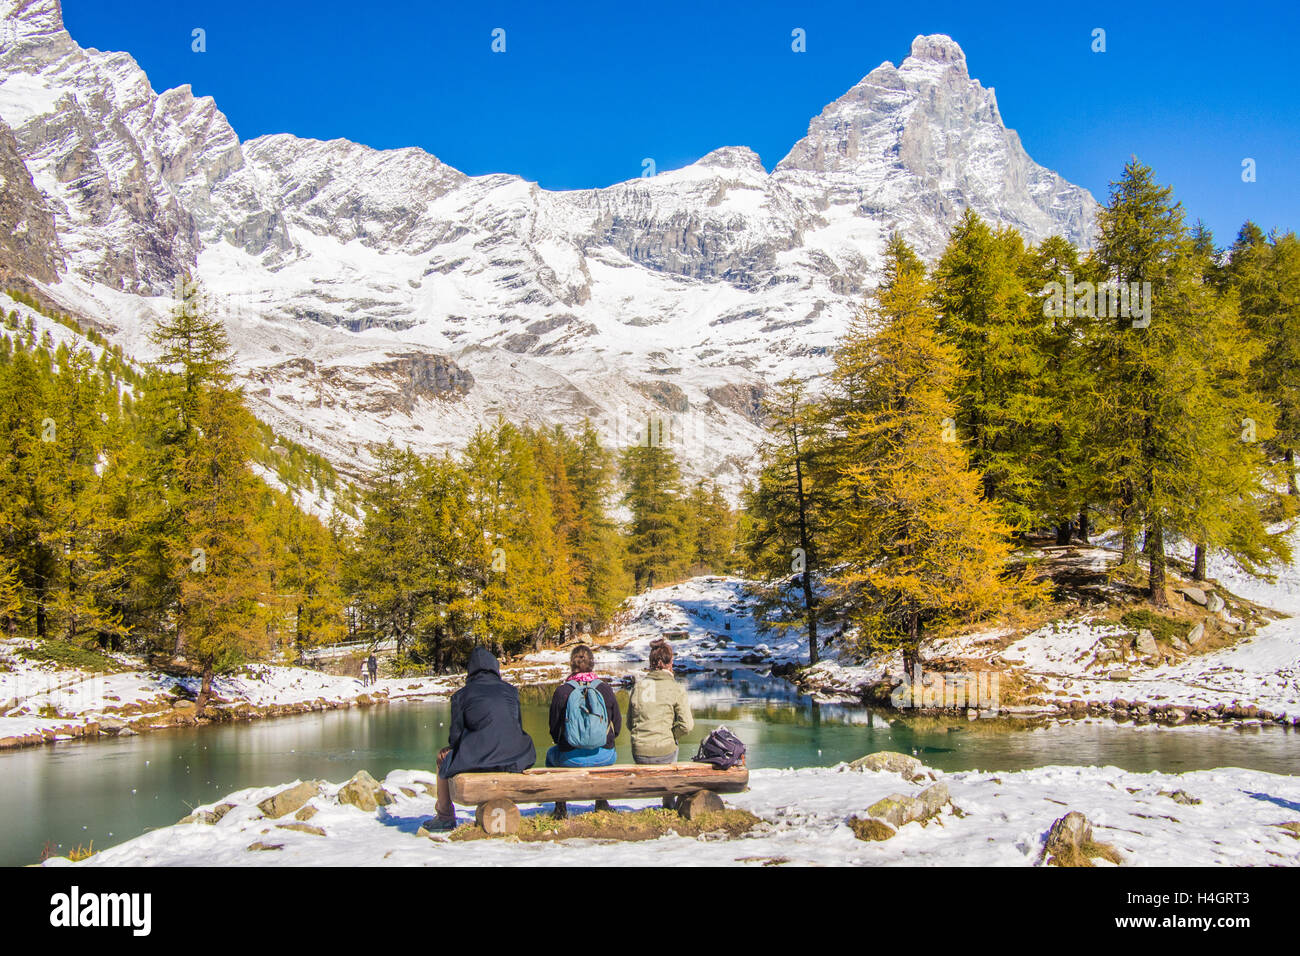 Lago Blu con il Monte Cervino (detto 'Cervino' in Svizzera) alle spalle, Valle d'Aosta, Italia. Gli amici si siedono su una panchina. Foto Stock